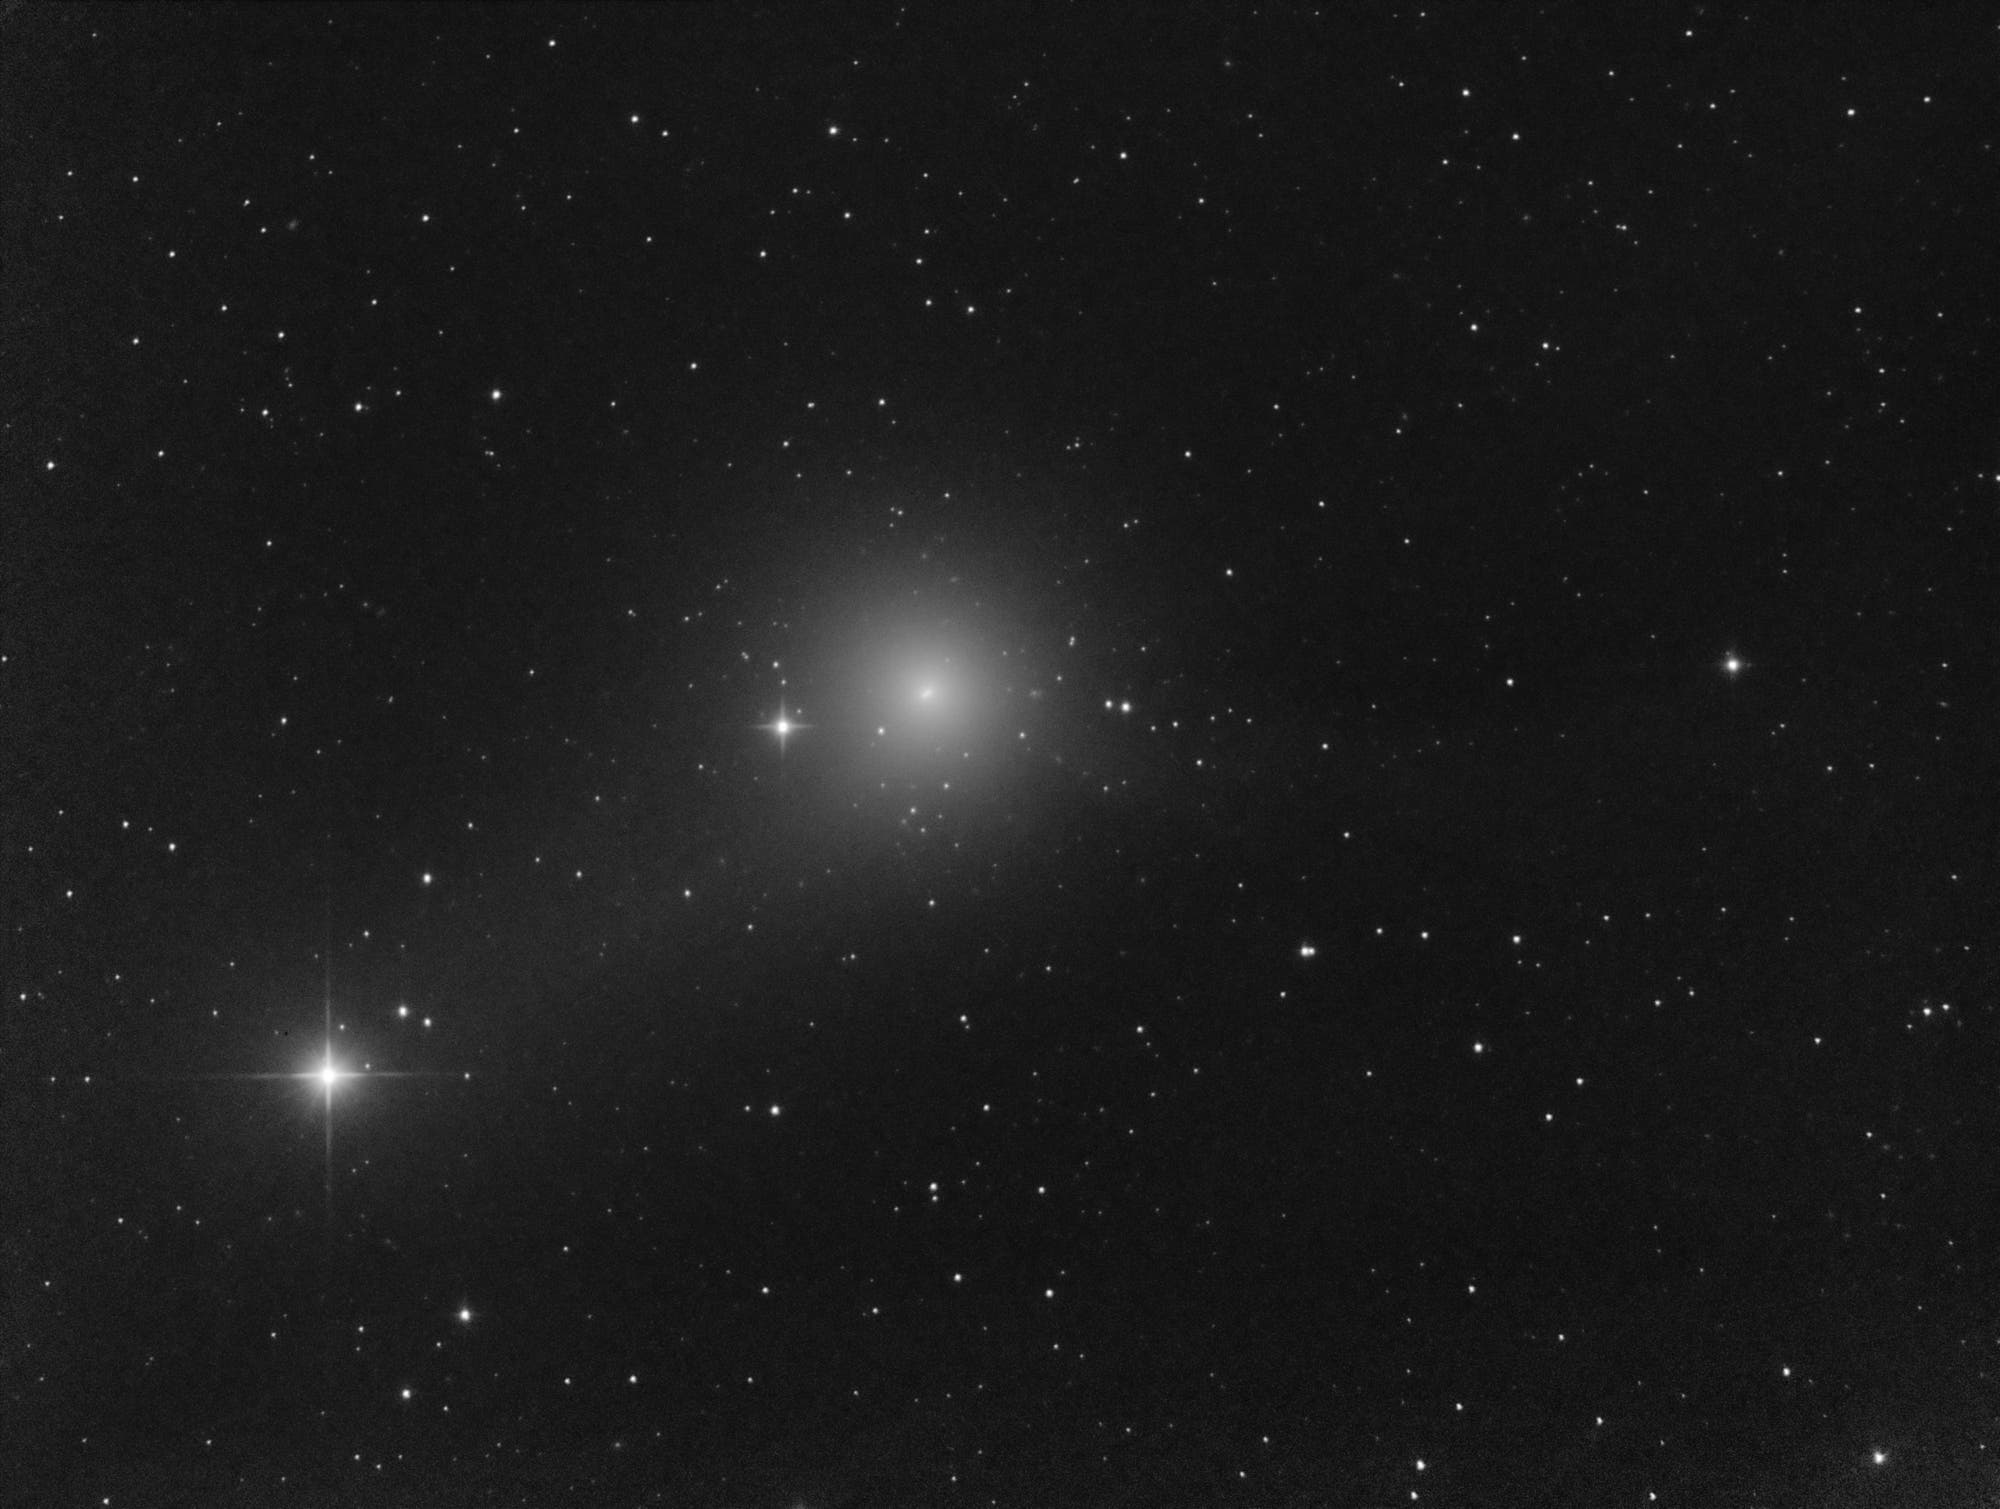 Comet C/2018 Y1 Iwamoto